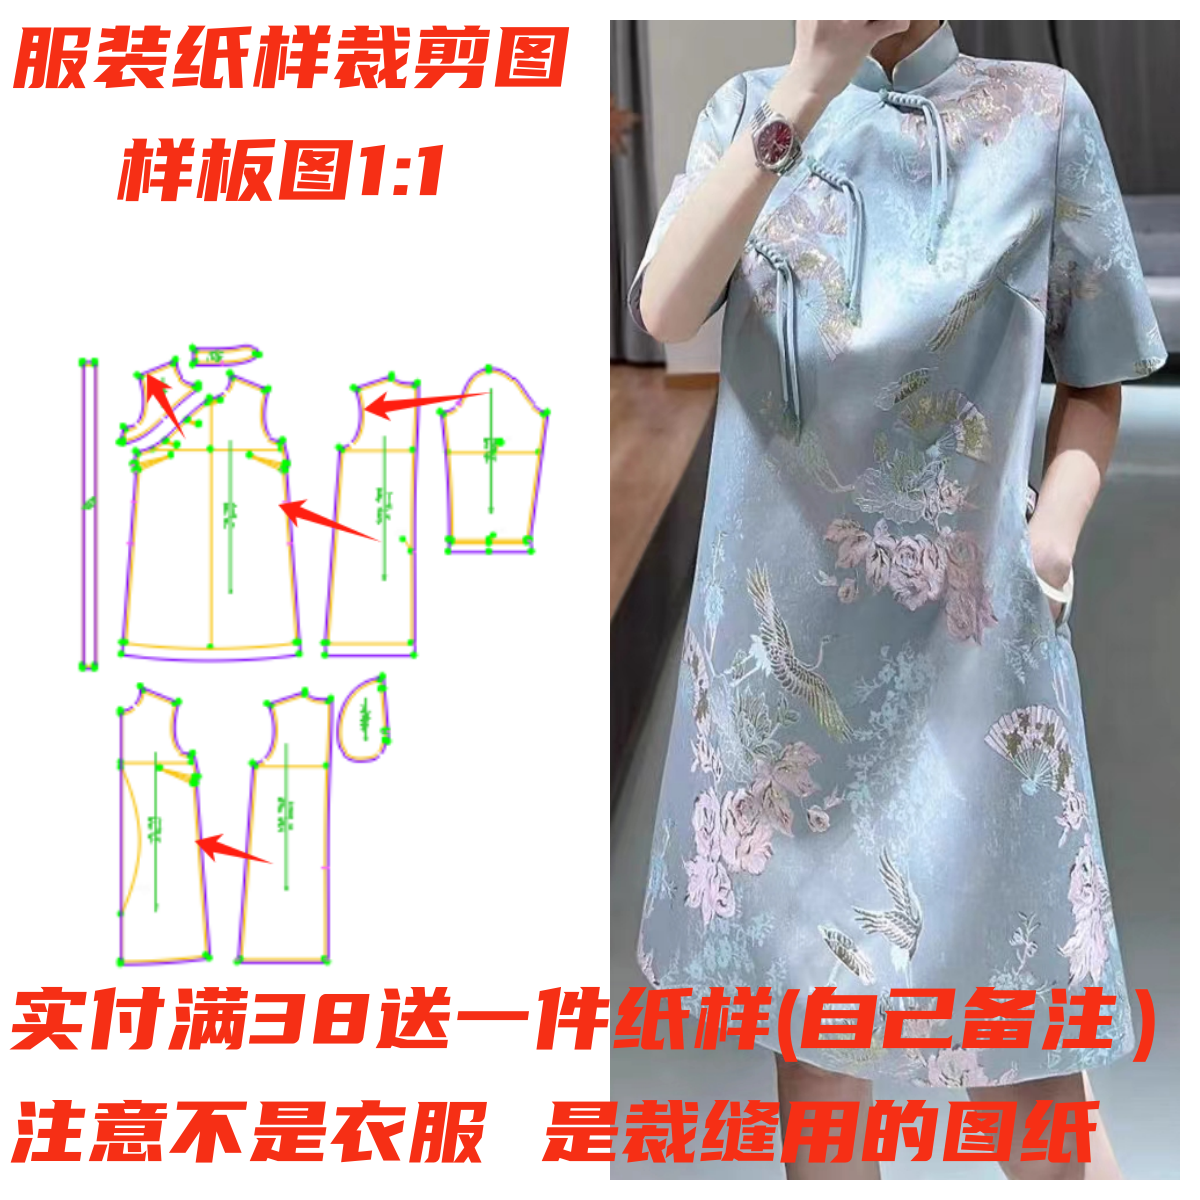 服装裁剪图1168款改良中式旗袍连衣裙纸样缝纫设计DIY1:1样板图